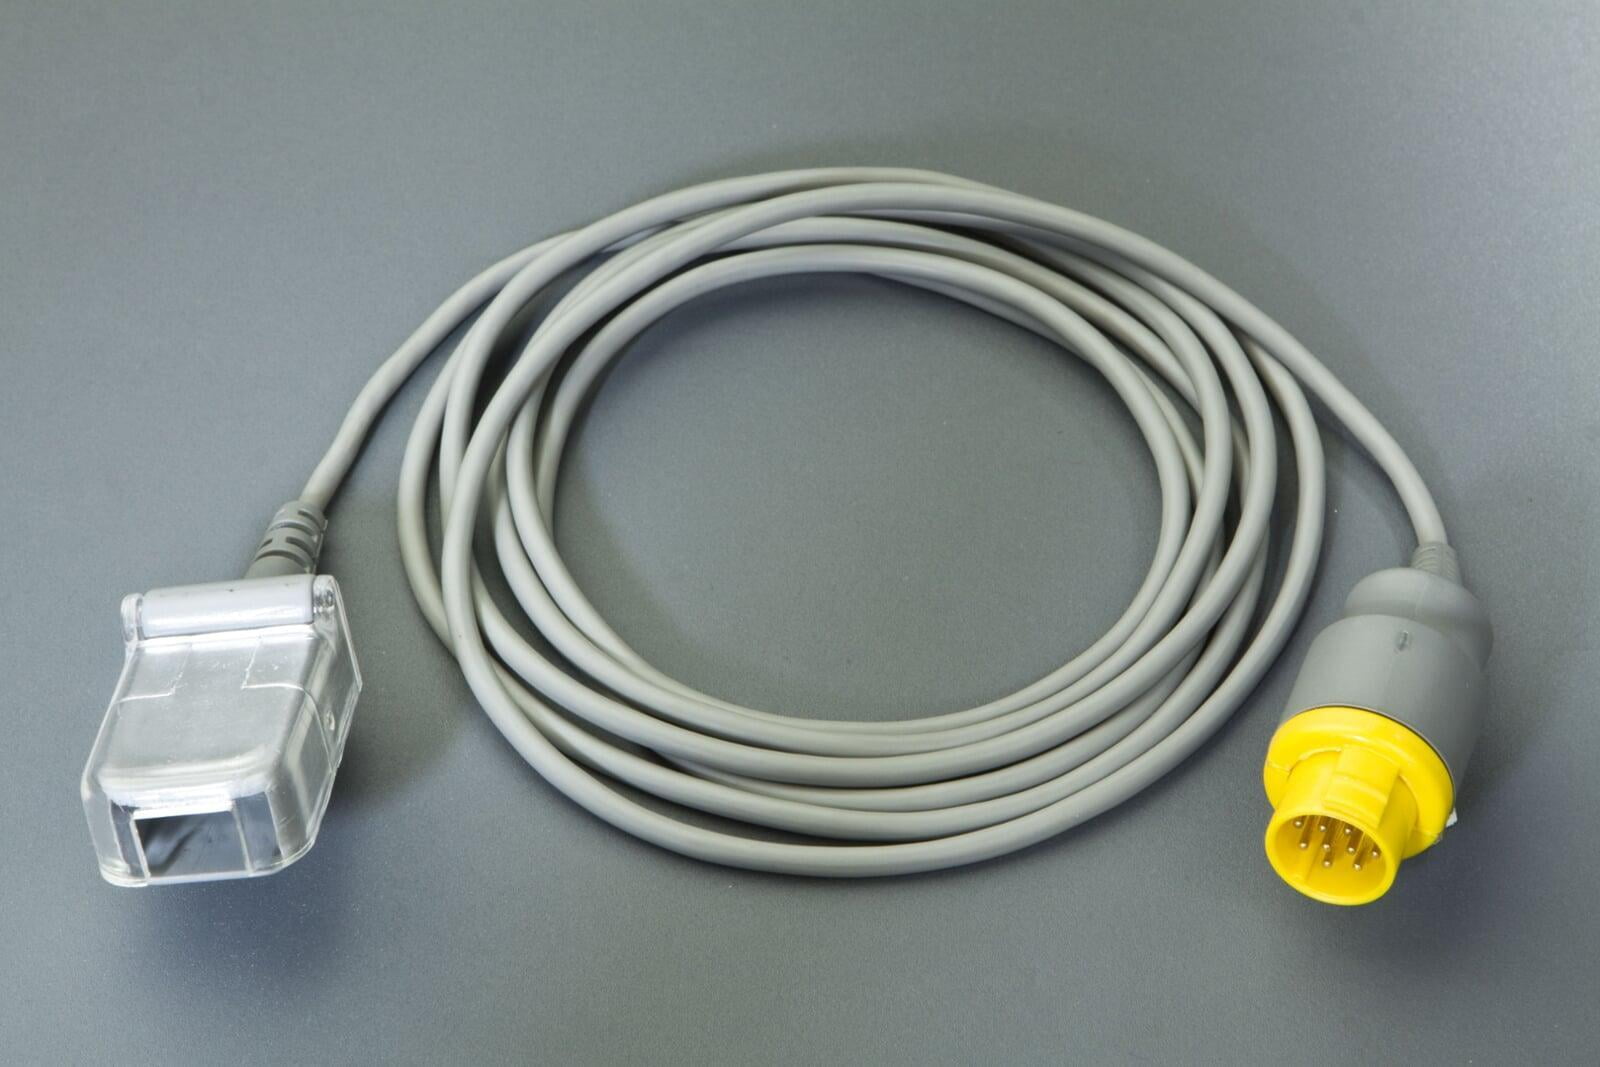 Spo2 sensor extension cable 